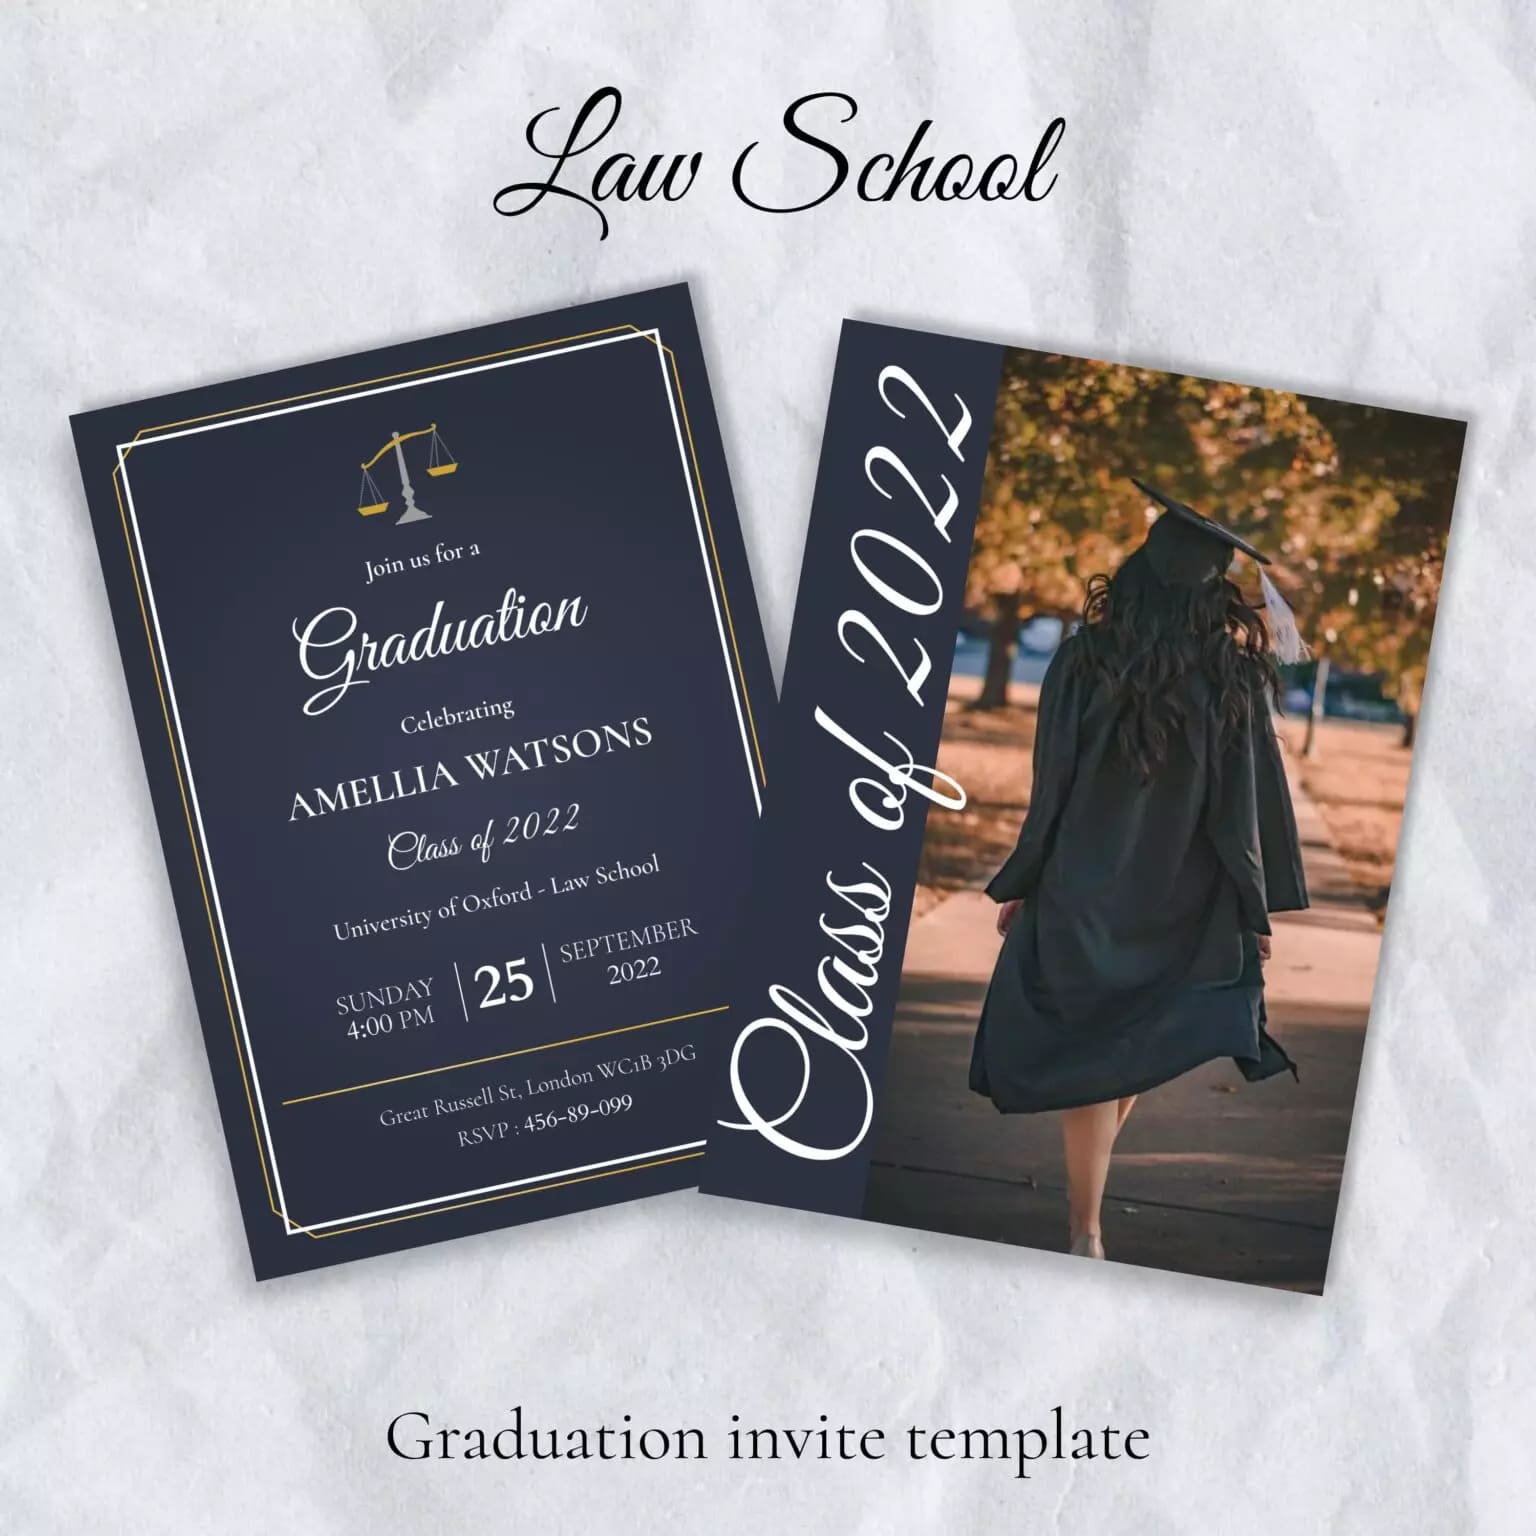 Law School Graduation Invite Template Preview.